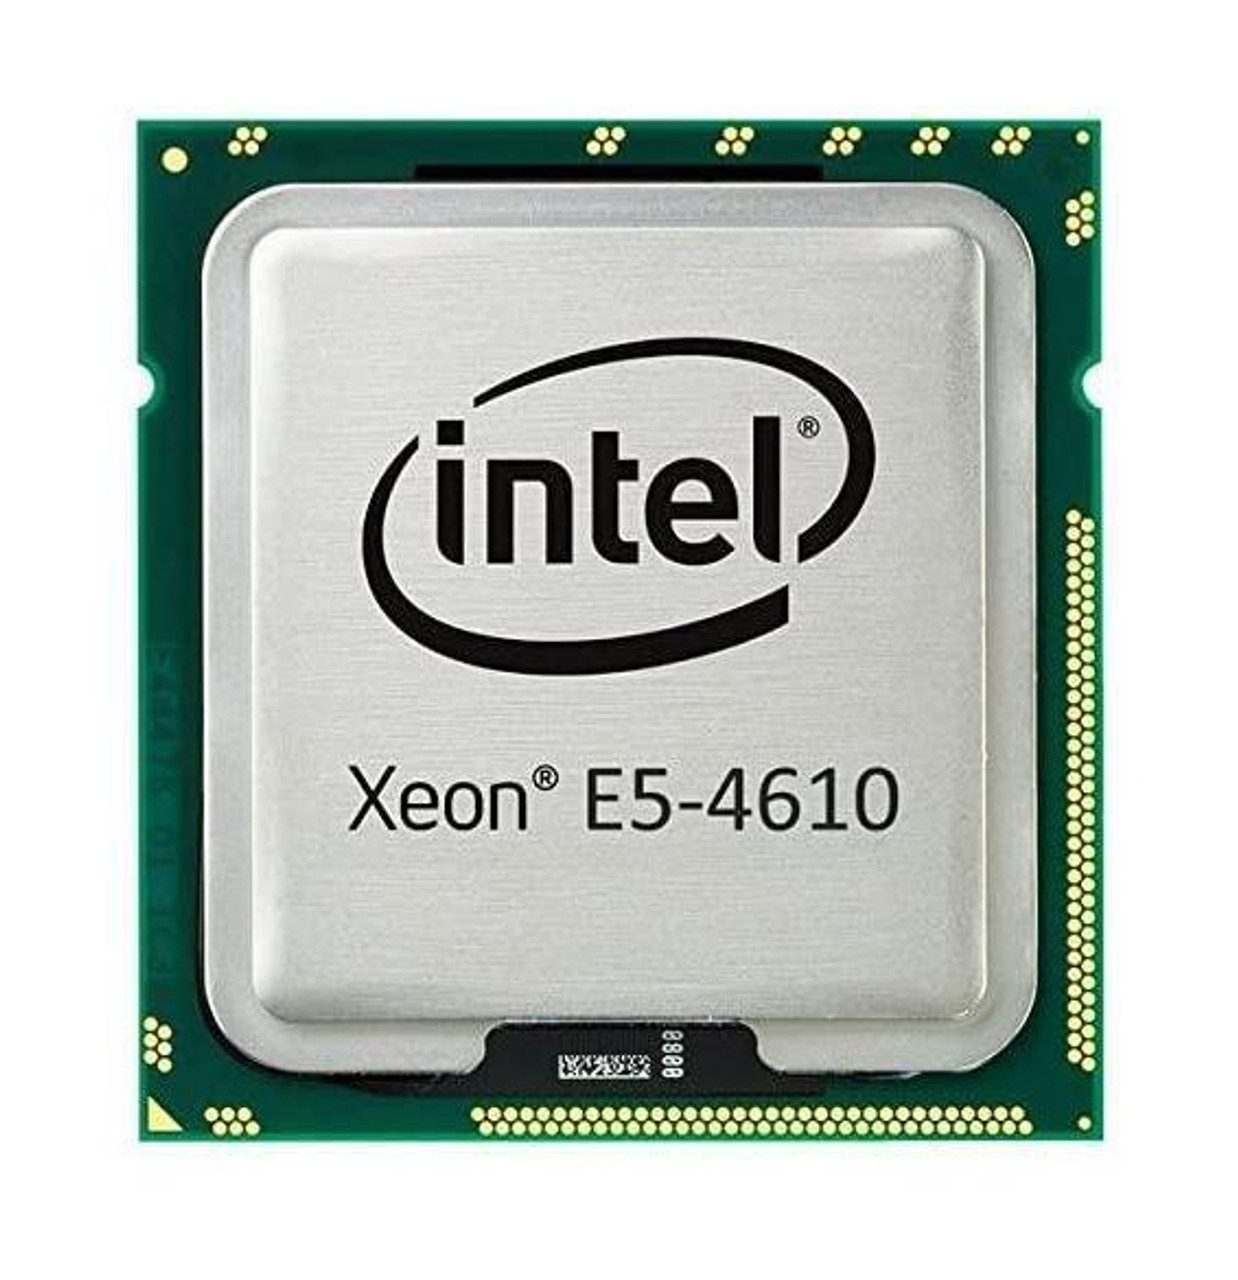 Lenovo 2.40GHz 7.20GT/s QPI 15MB L3 Cache Intel Xeon E5-4610 6-Core Processor Upgrade